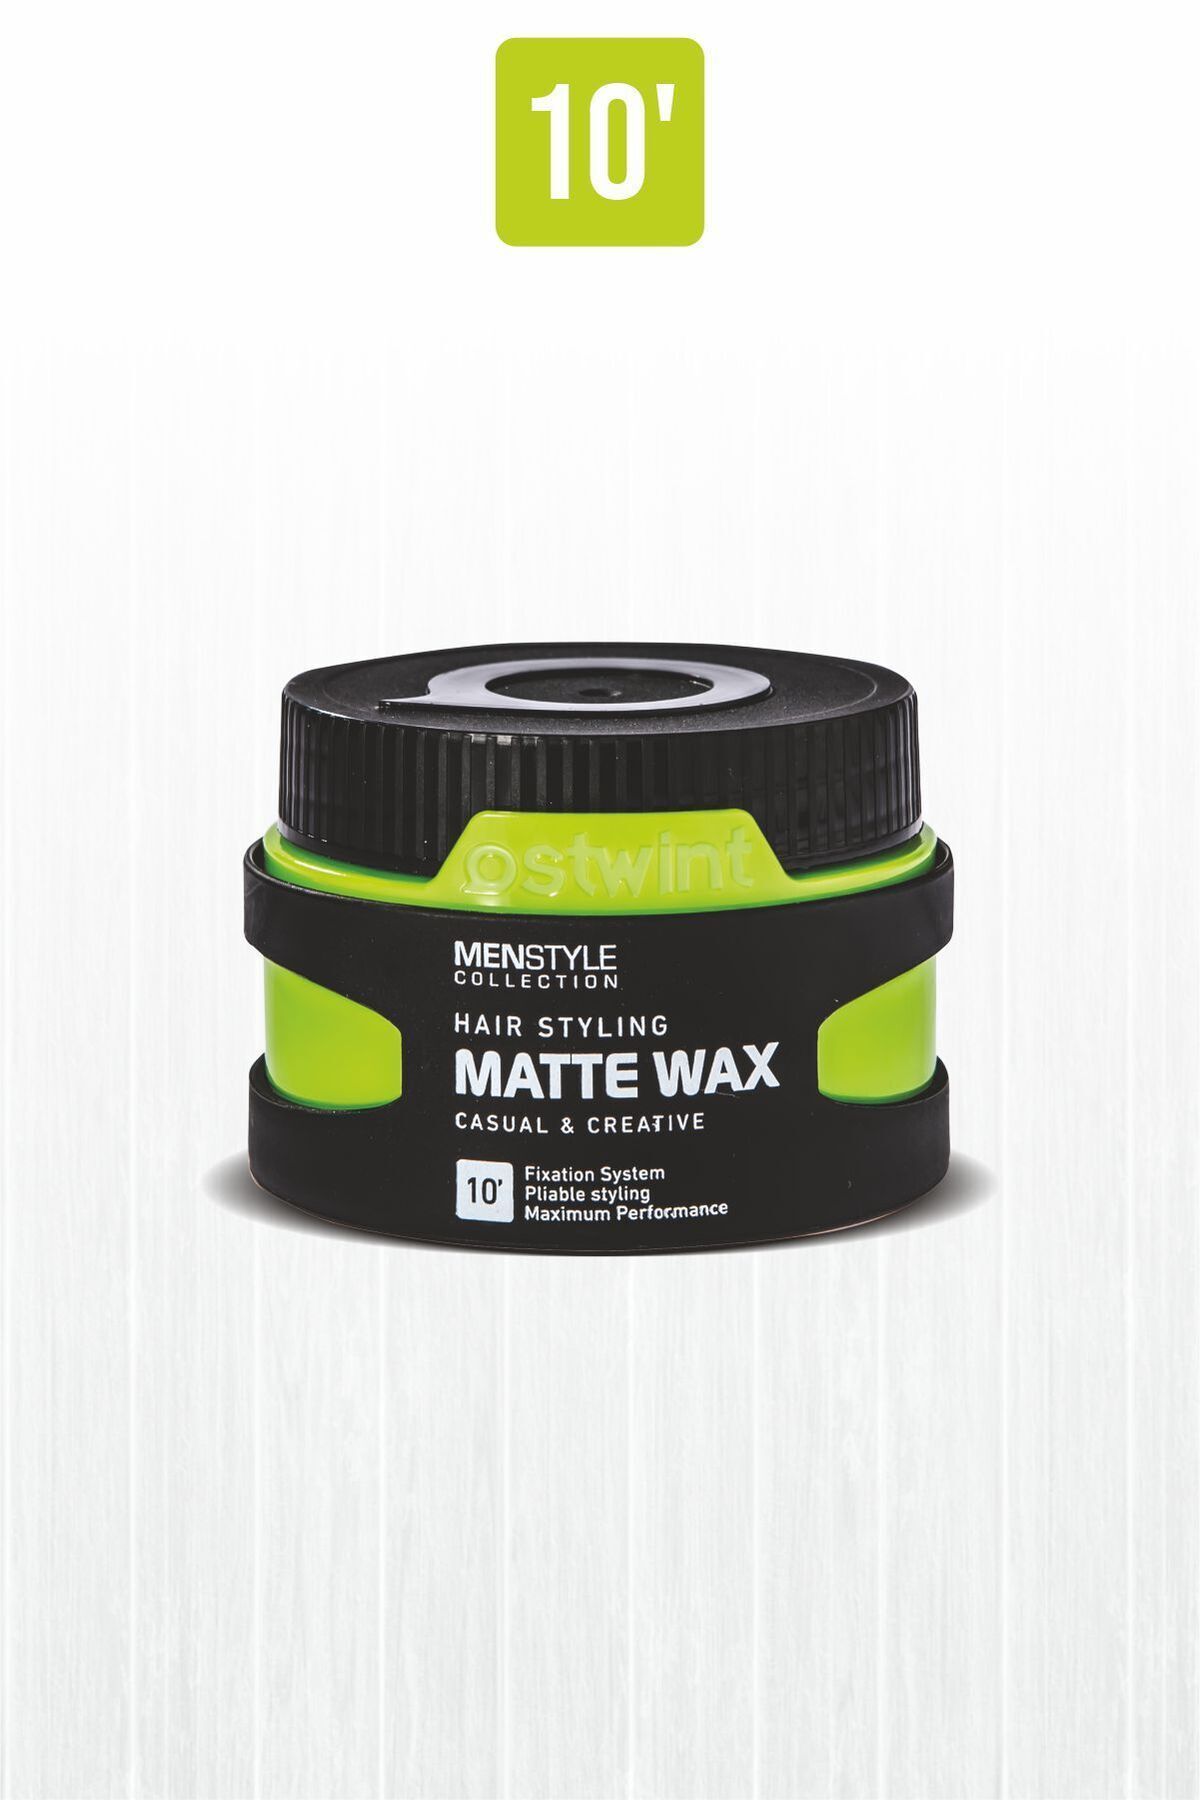 Ostwint Menstyle Collection Saç Şekillendirici Matte Wax No10 150 ml